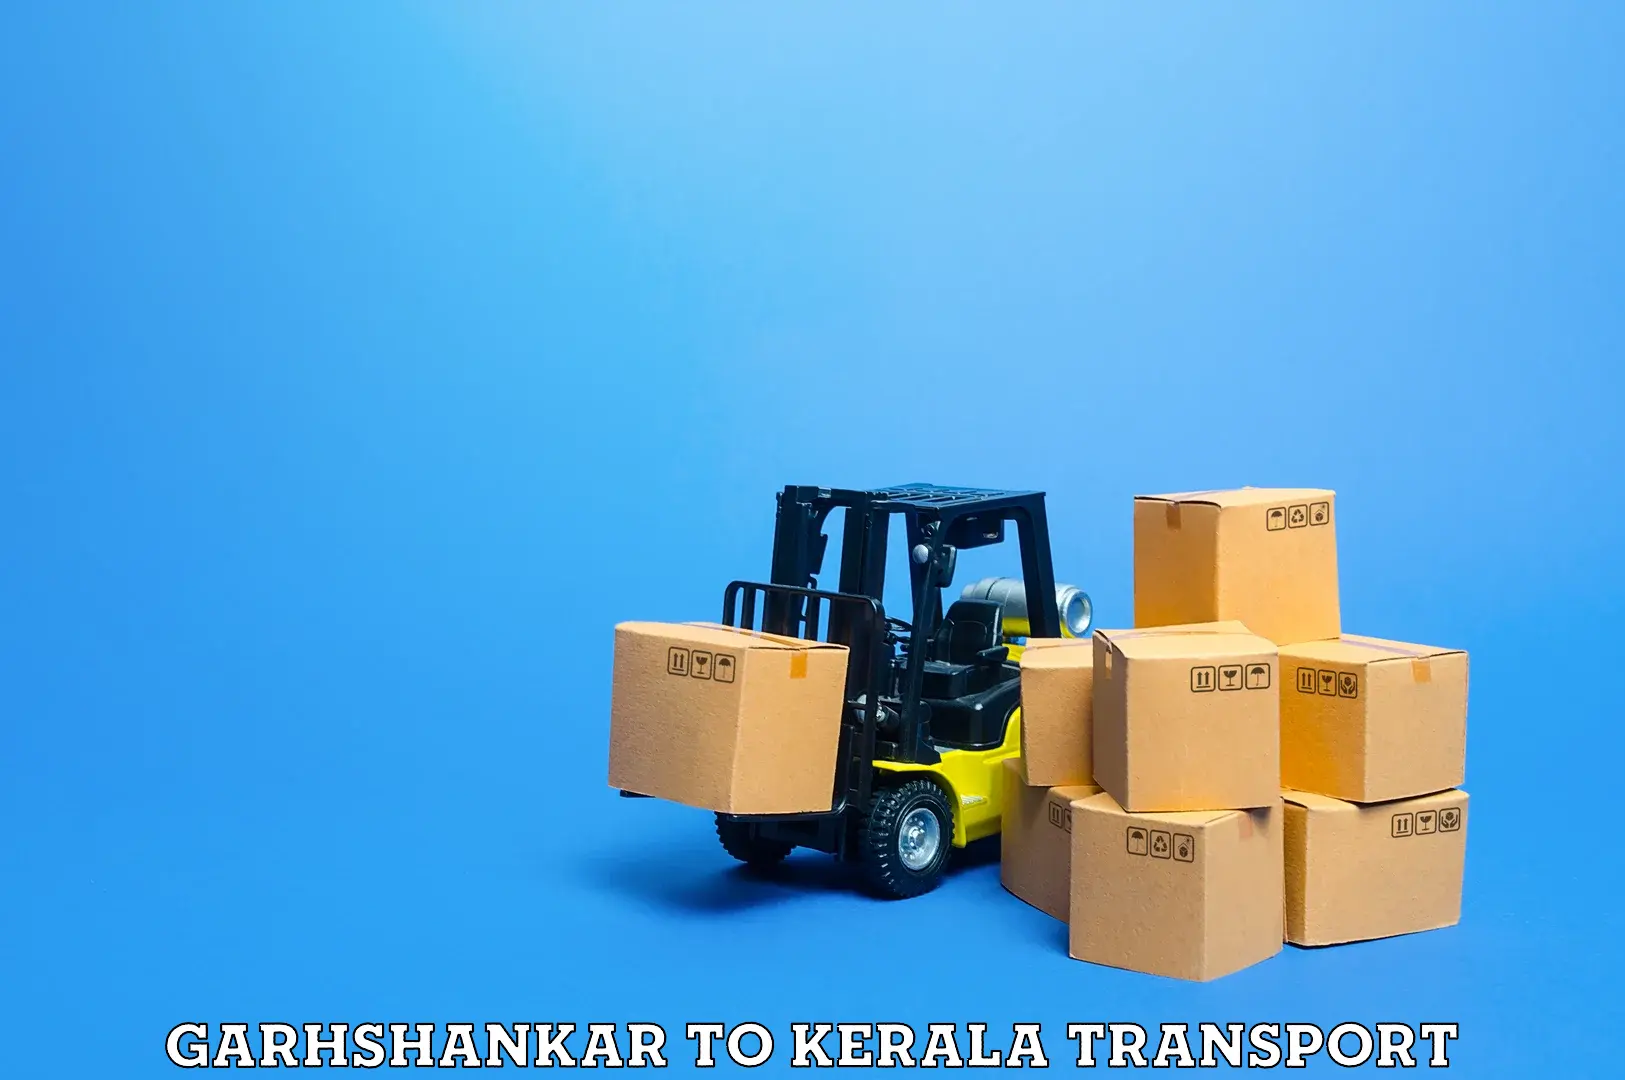 Furniture transport service Garhshankar to Kerala